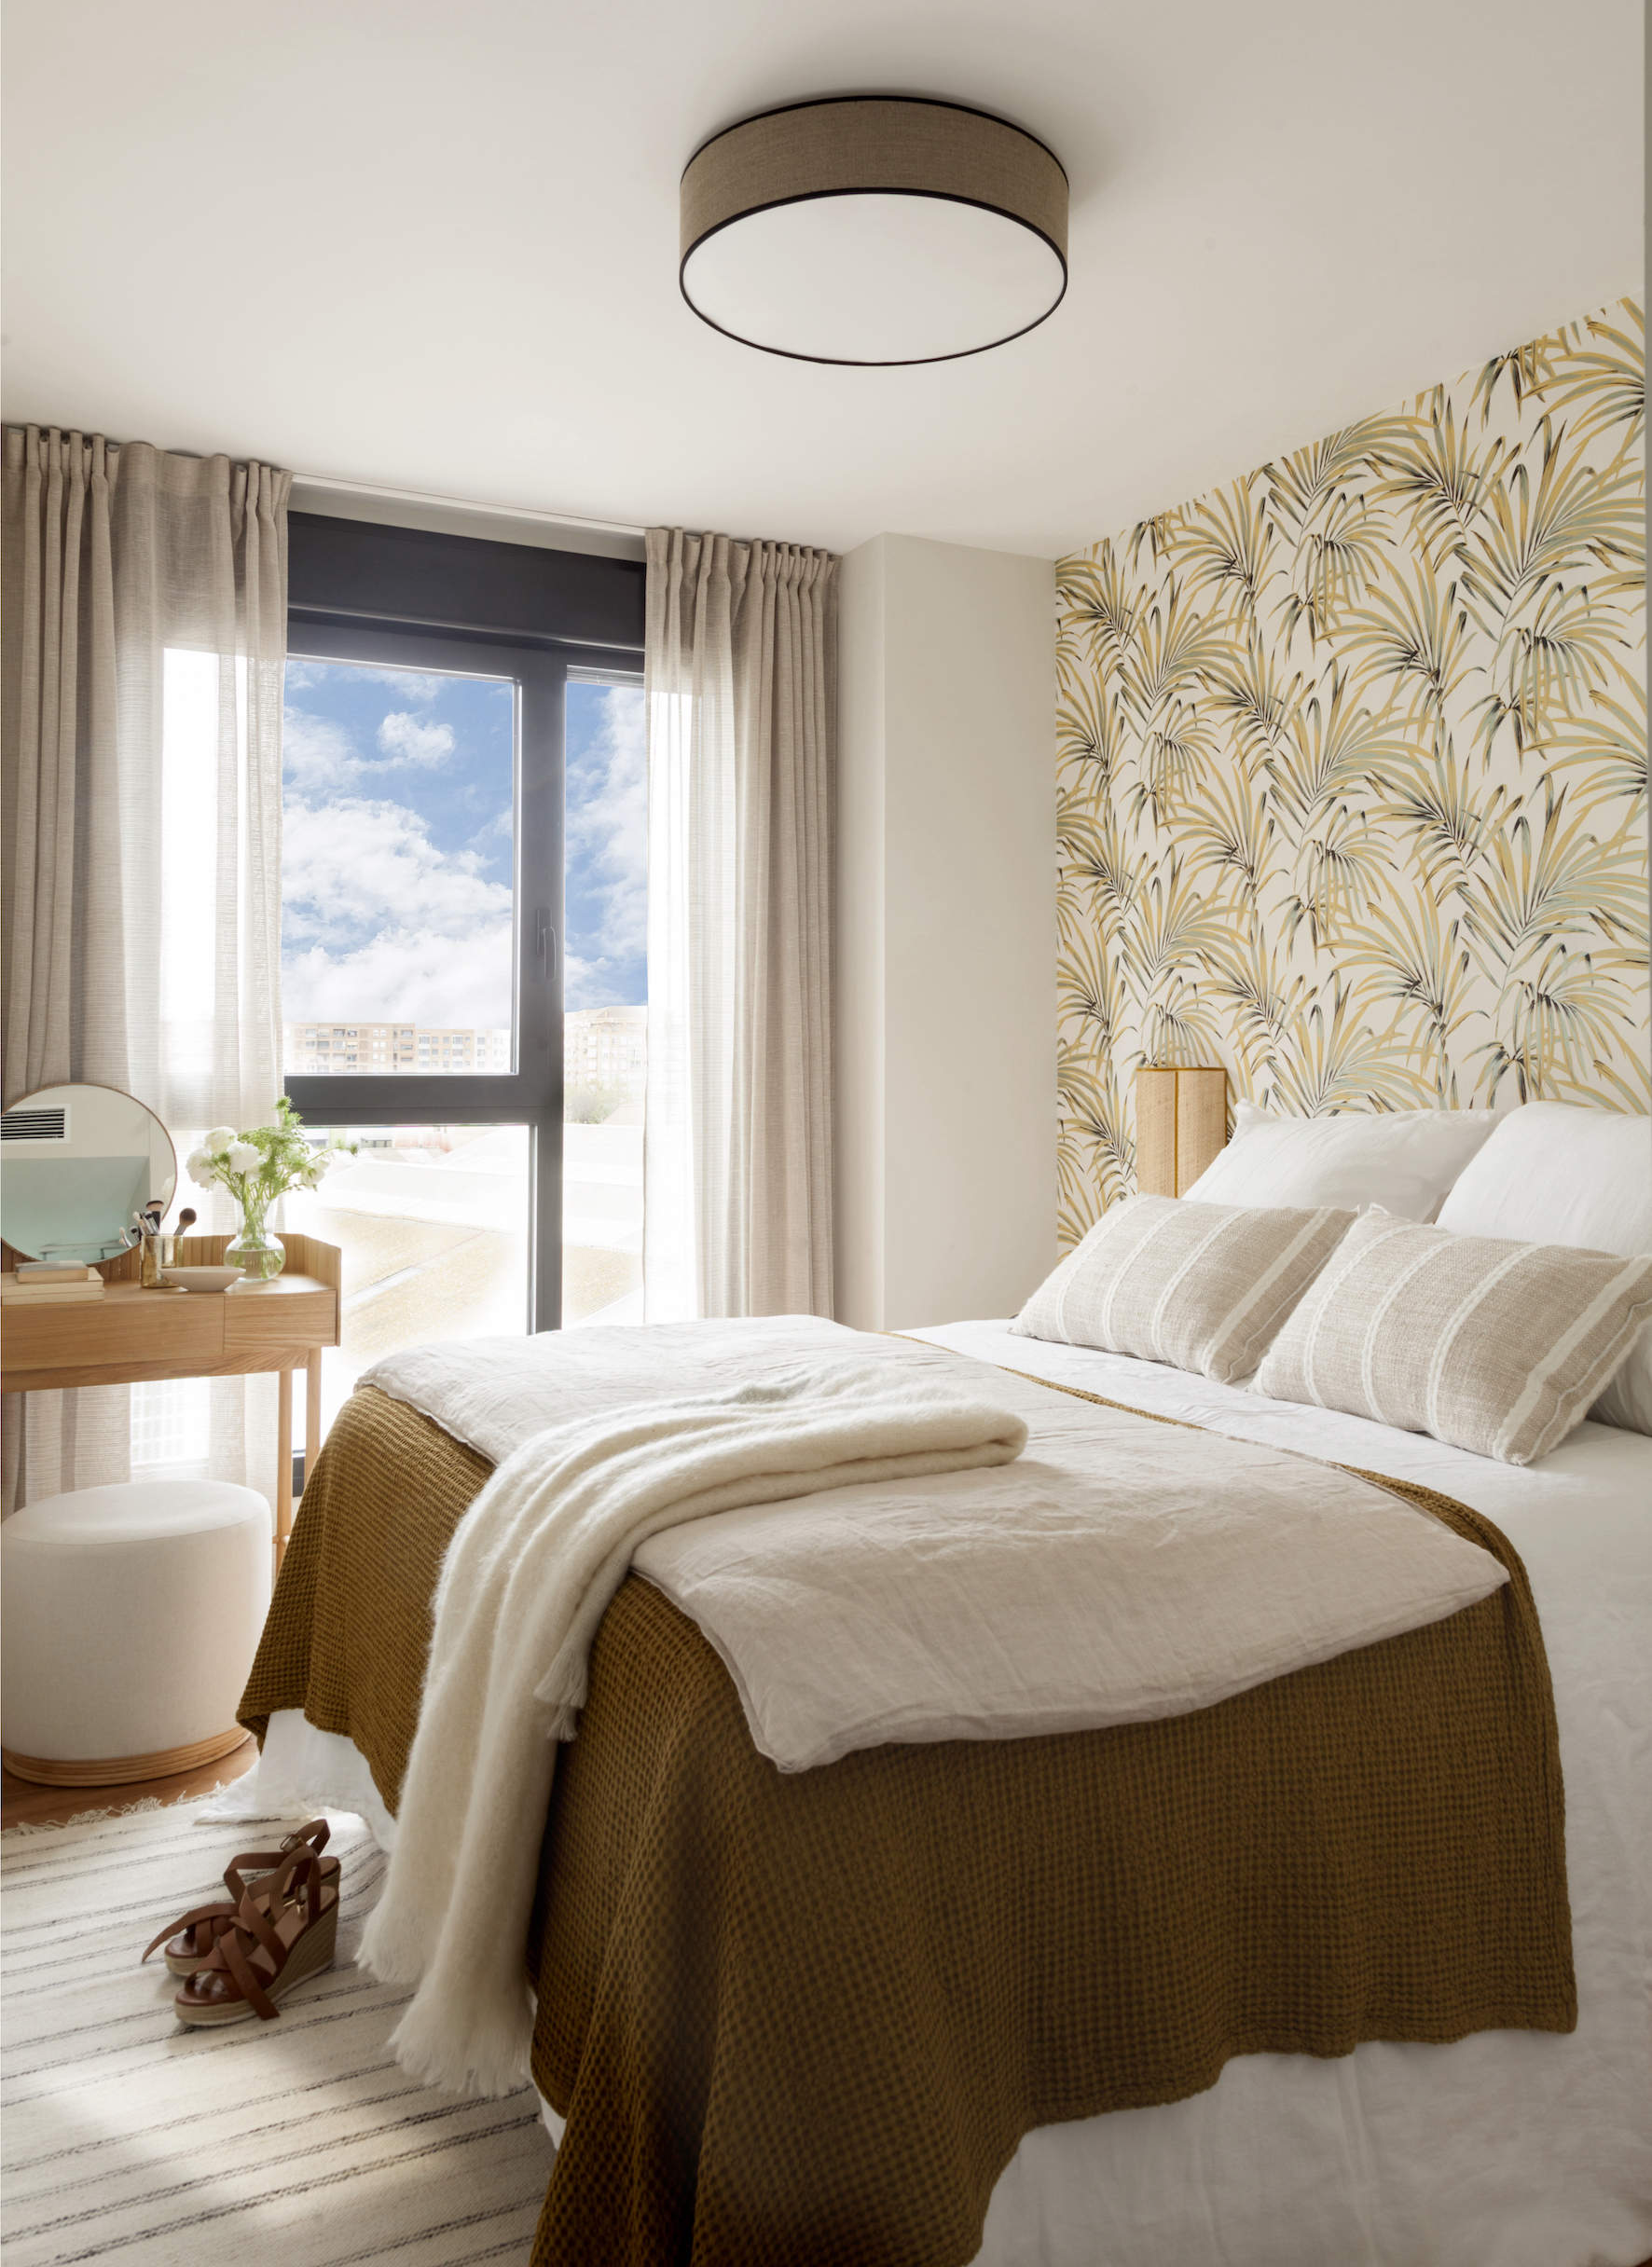 Dormitorio con papel pintado estampado, tocador y ropa de cama blanca y beige Majo Flores